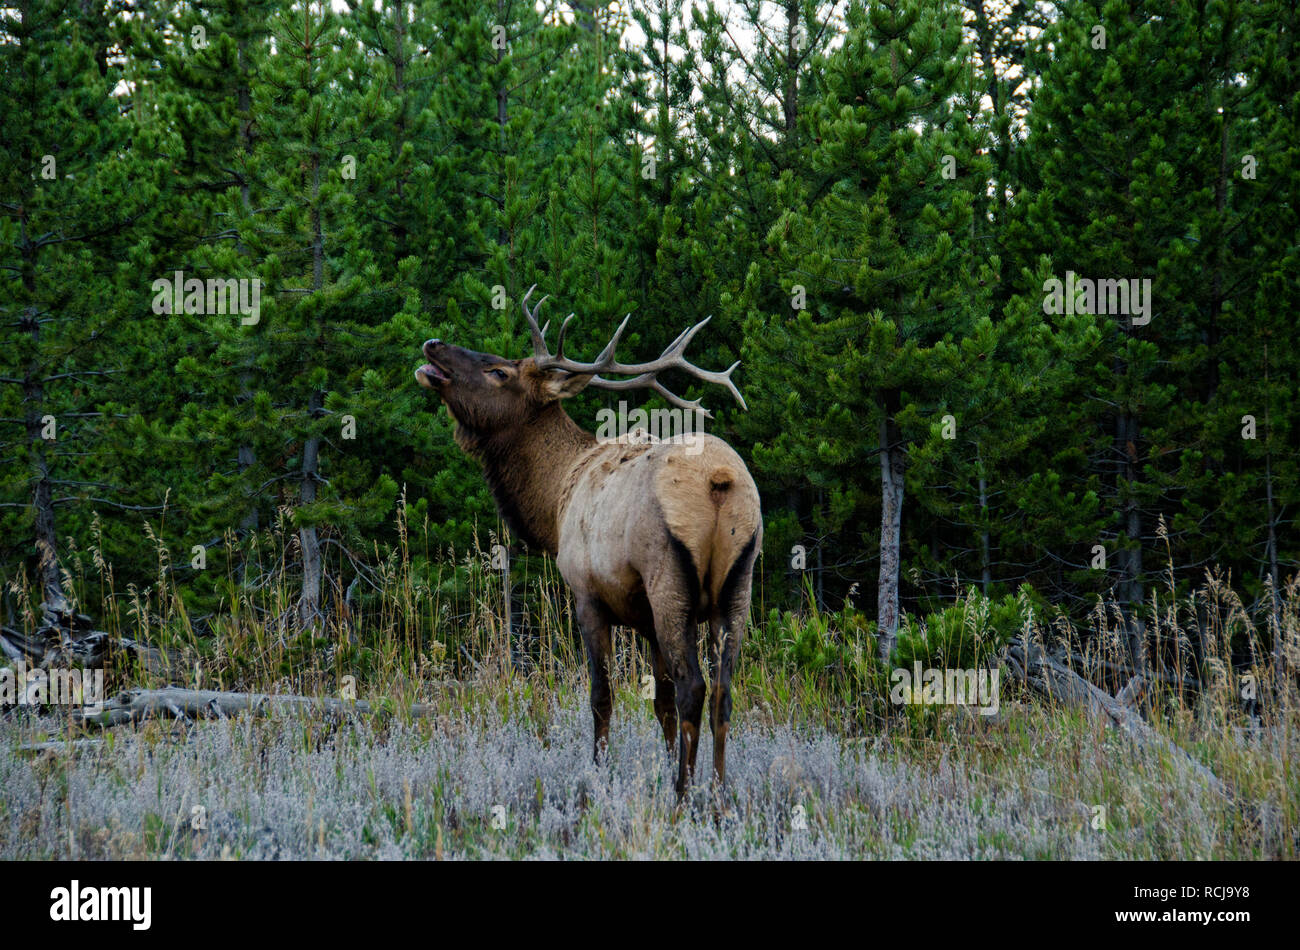 Bull Elk (Wapiti) in Yellowstone National Park, Wyoming, United States Stock Photo